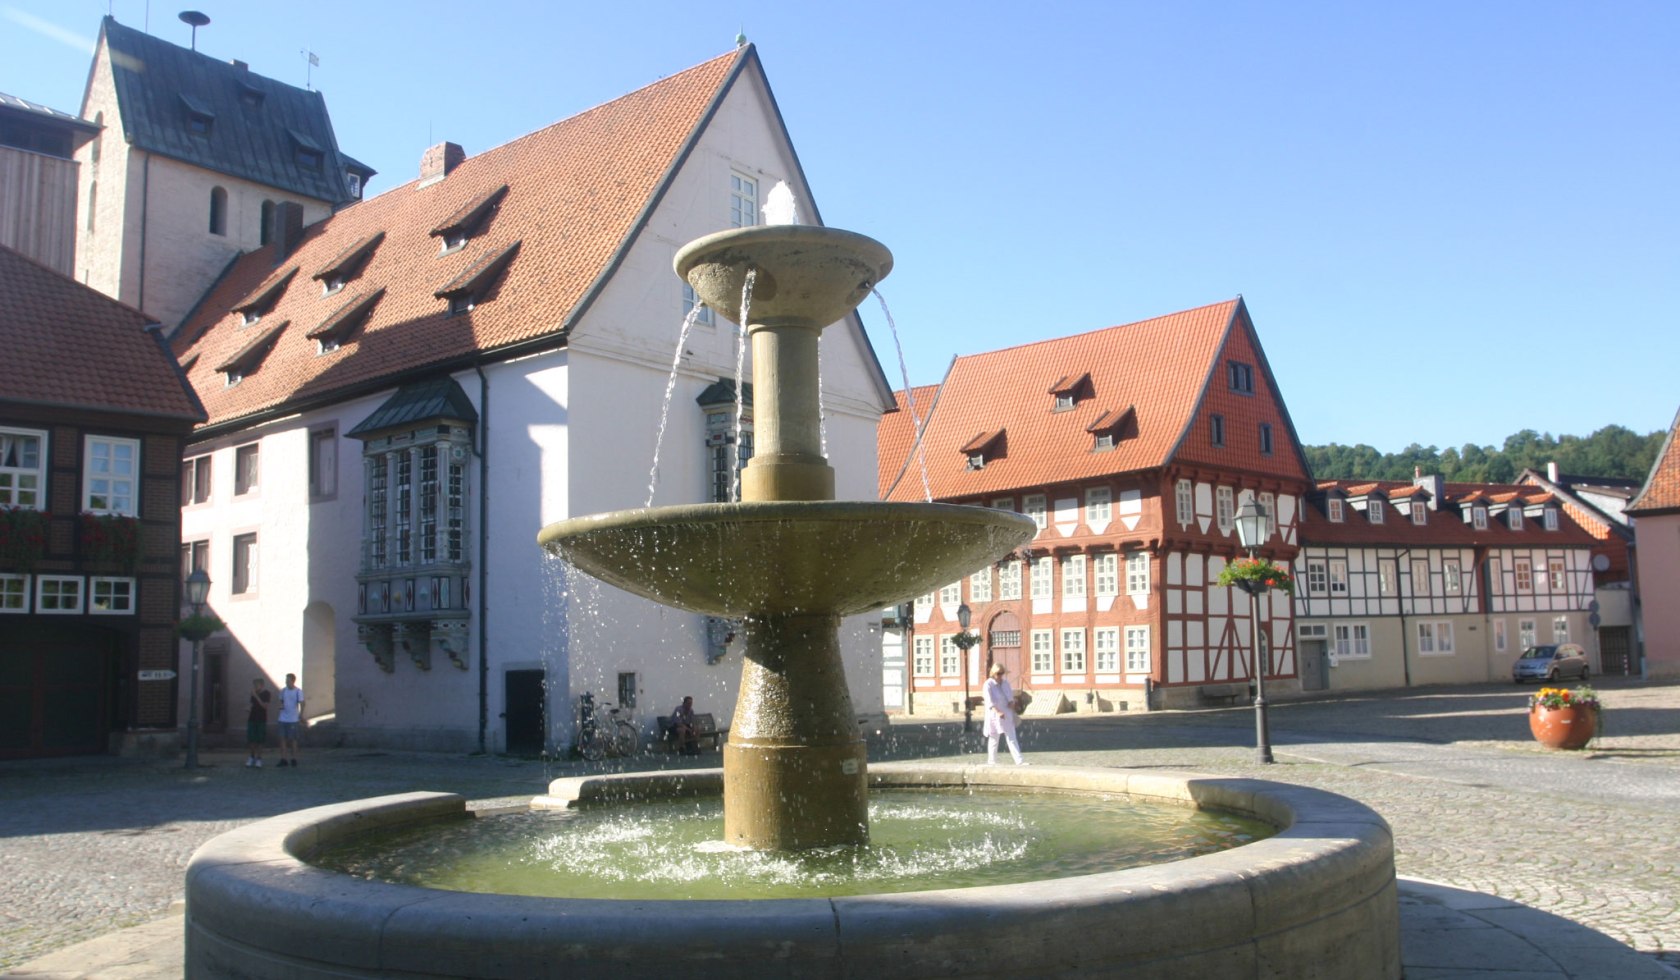 Stiftsfreiheit and festival fountain, © Stadt Bad Gandersheim/ Manfred Kielhorn